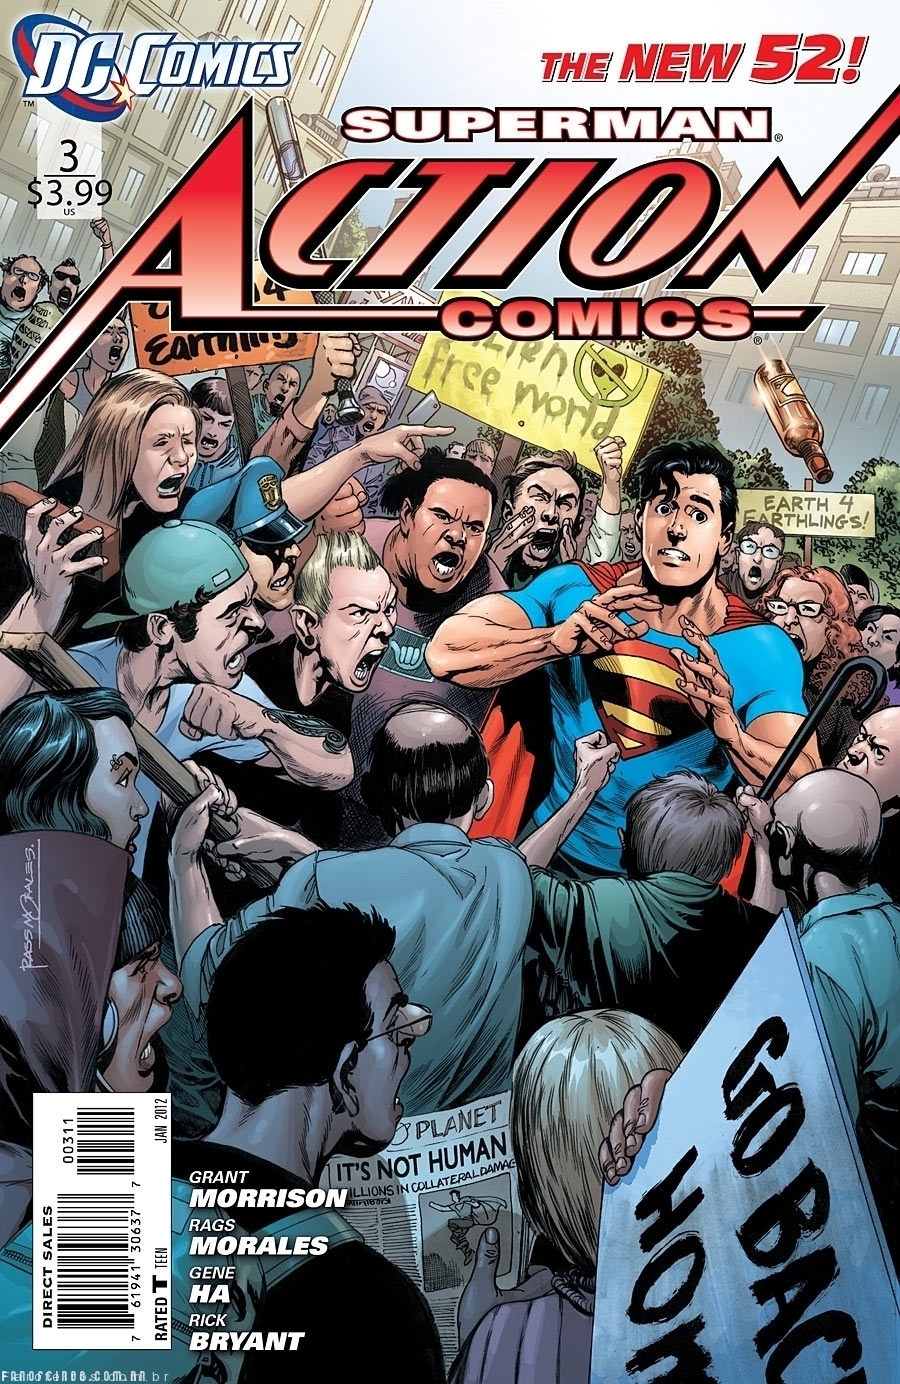 Preview de Action Comics #3 - Superman - Novos 52 - DC Comics - Blog Farofeiros